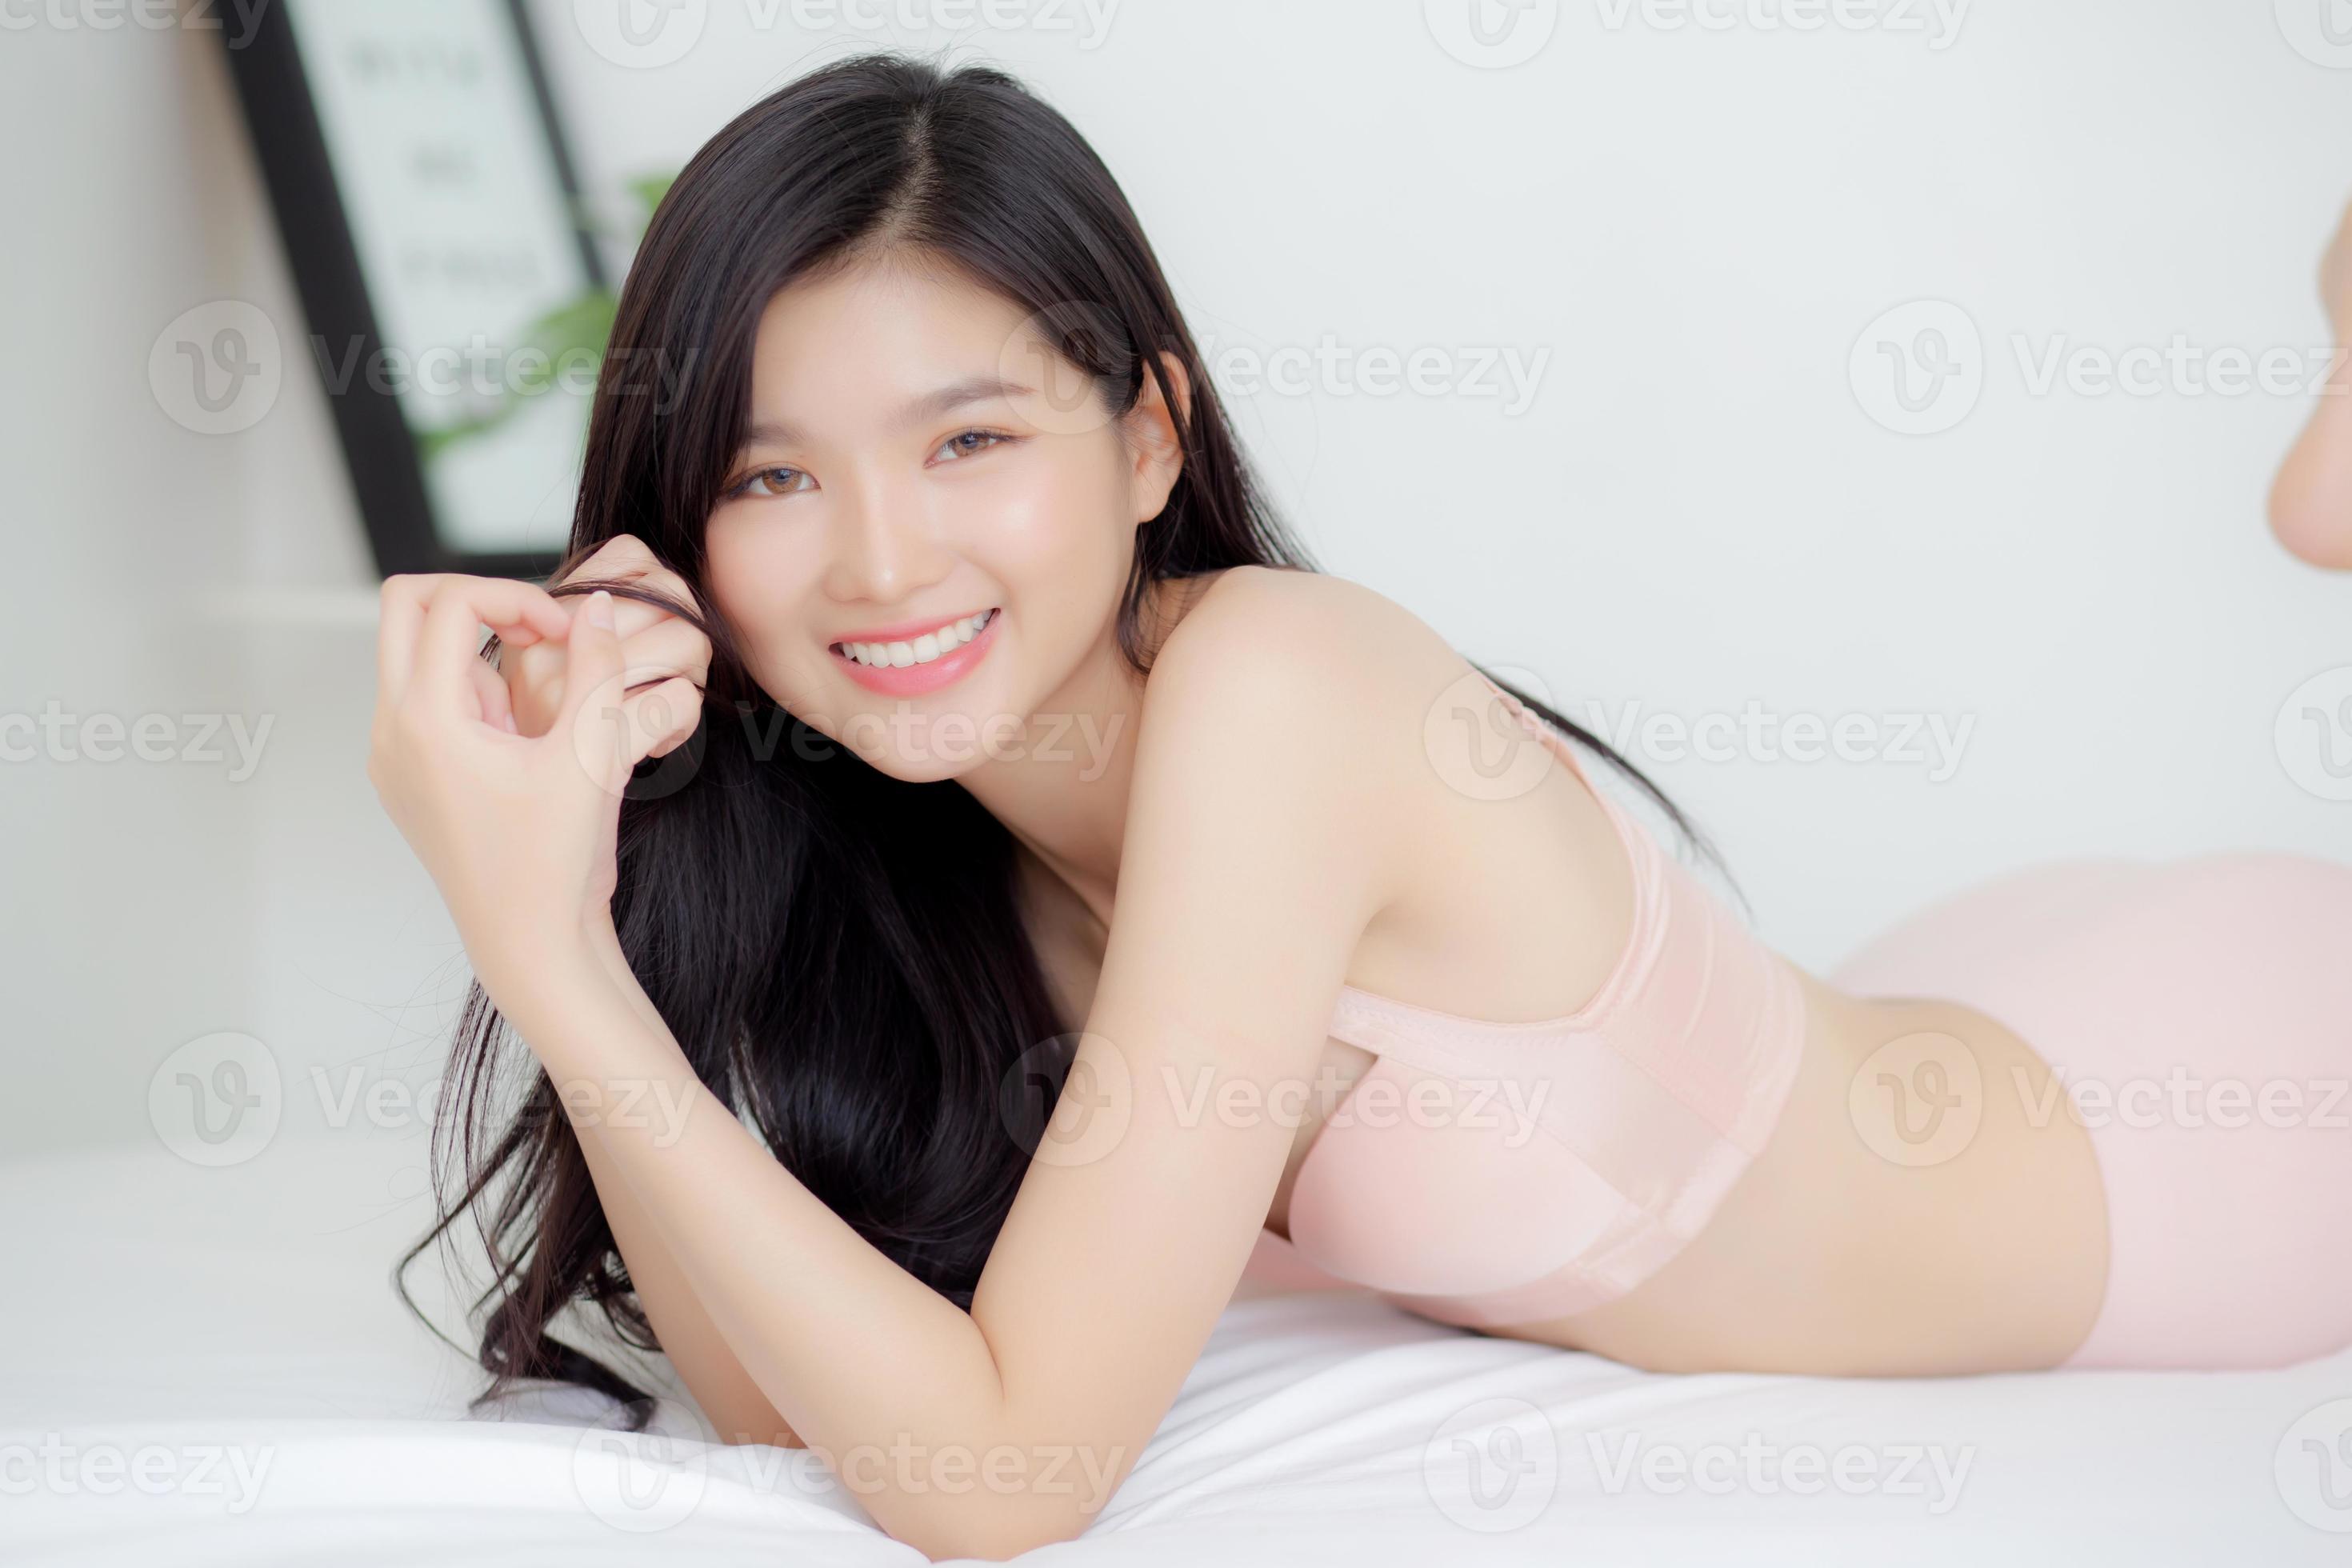 belo retrato jovem mulher asiática sexy em roupa íntima caber relaxar com sedutor no quarto, corpo de menina ásia magro em lingerie confiante e feliz deitada na cama no quarto, conceito de foto imagem